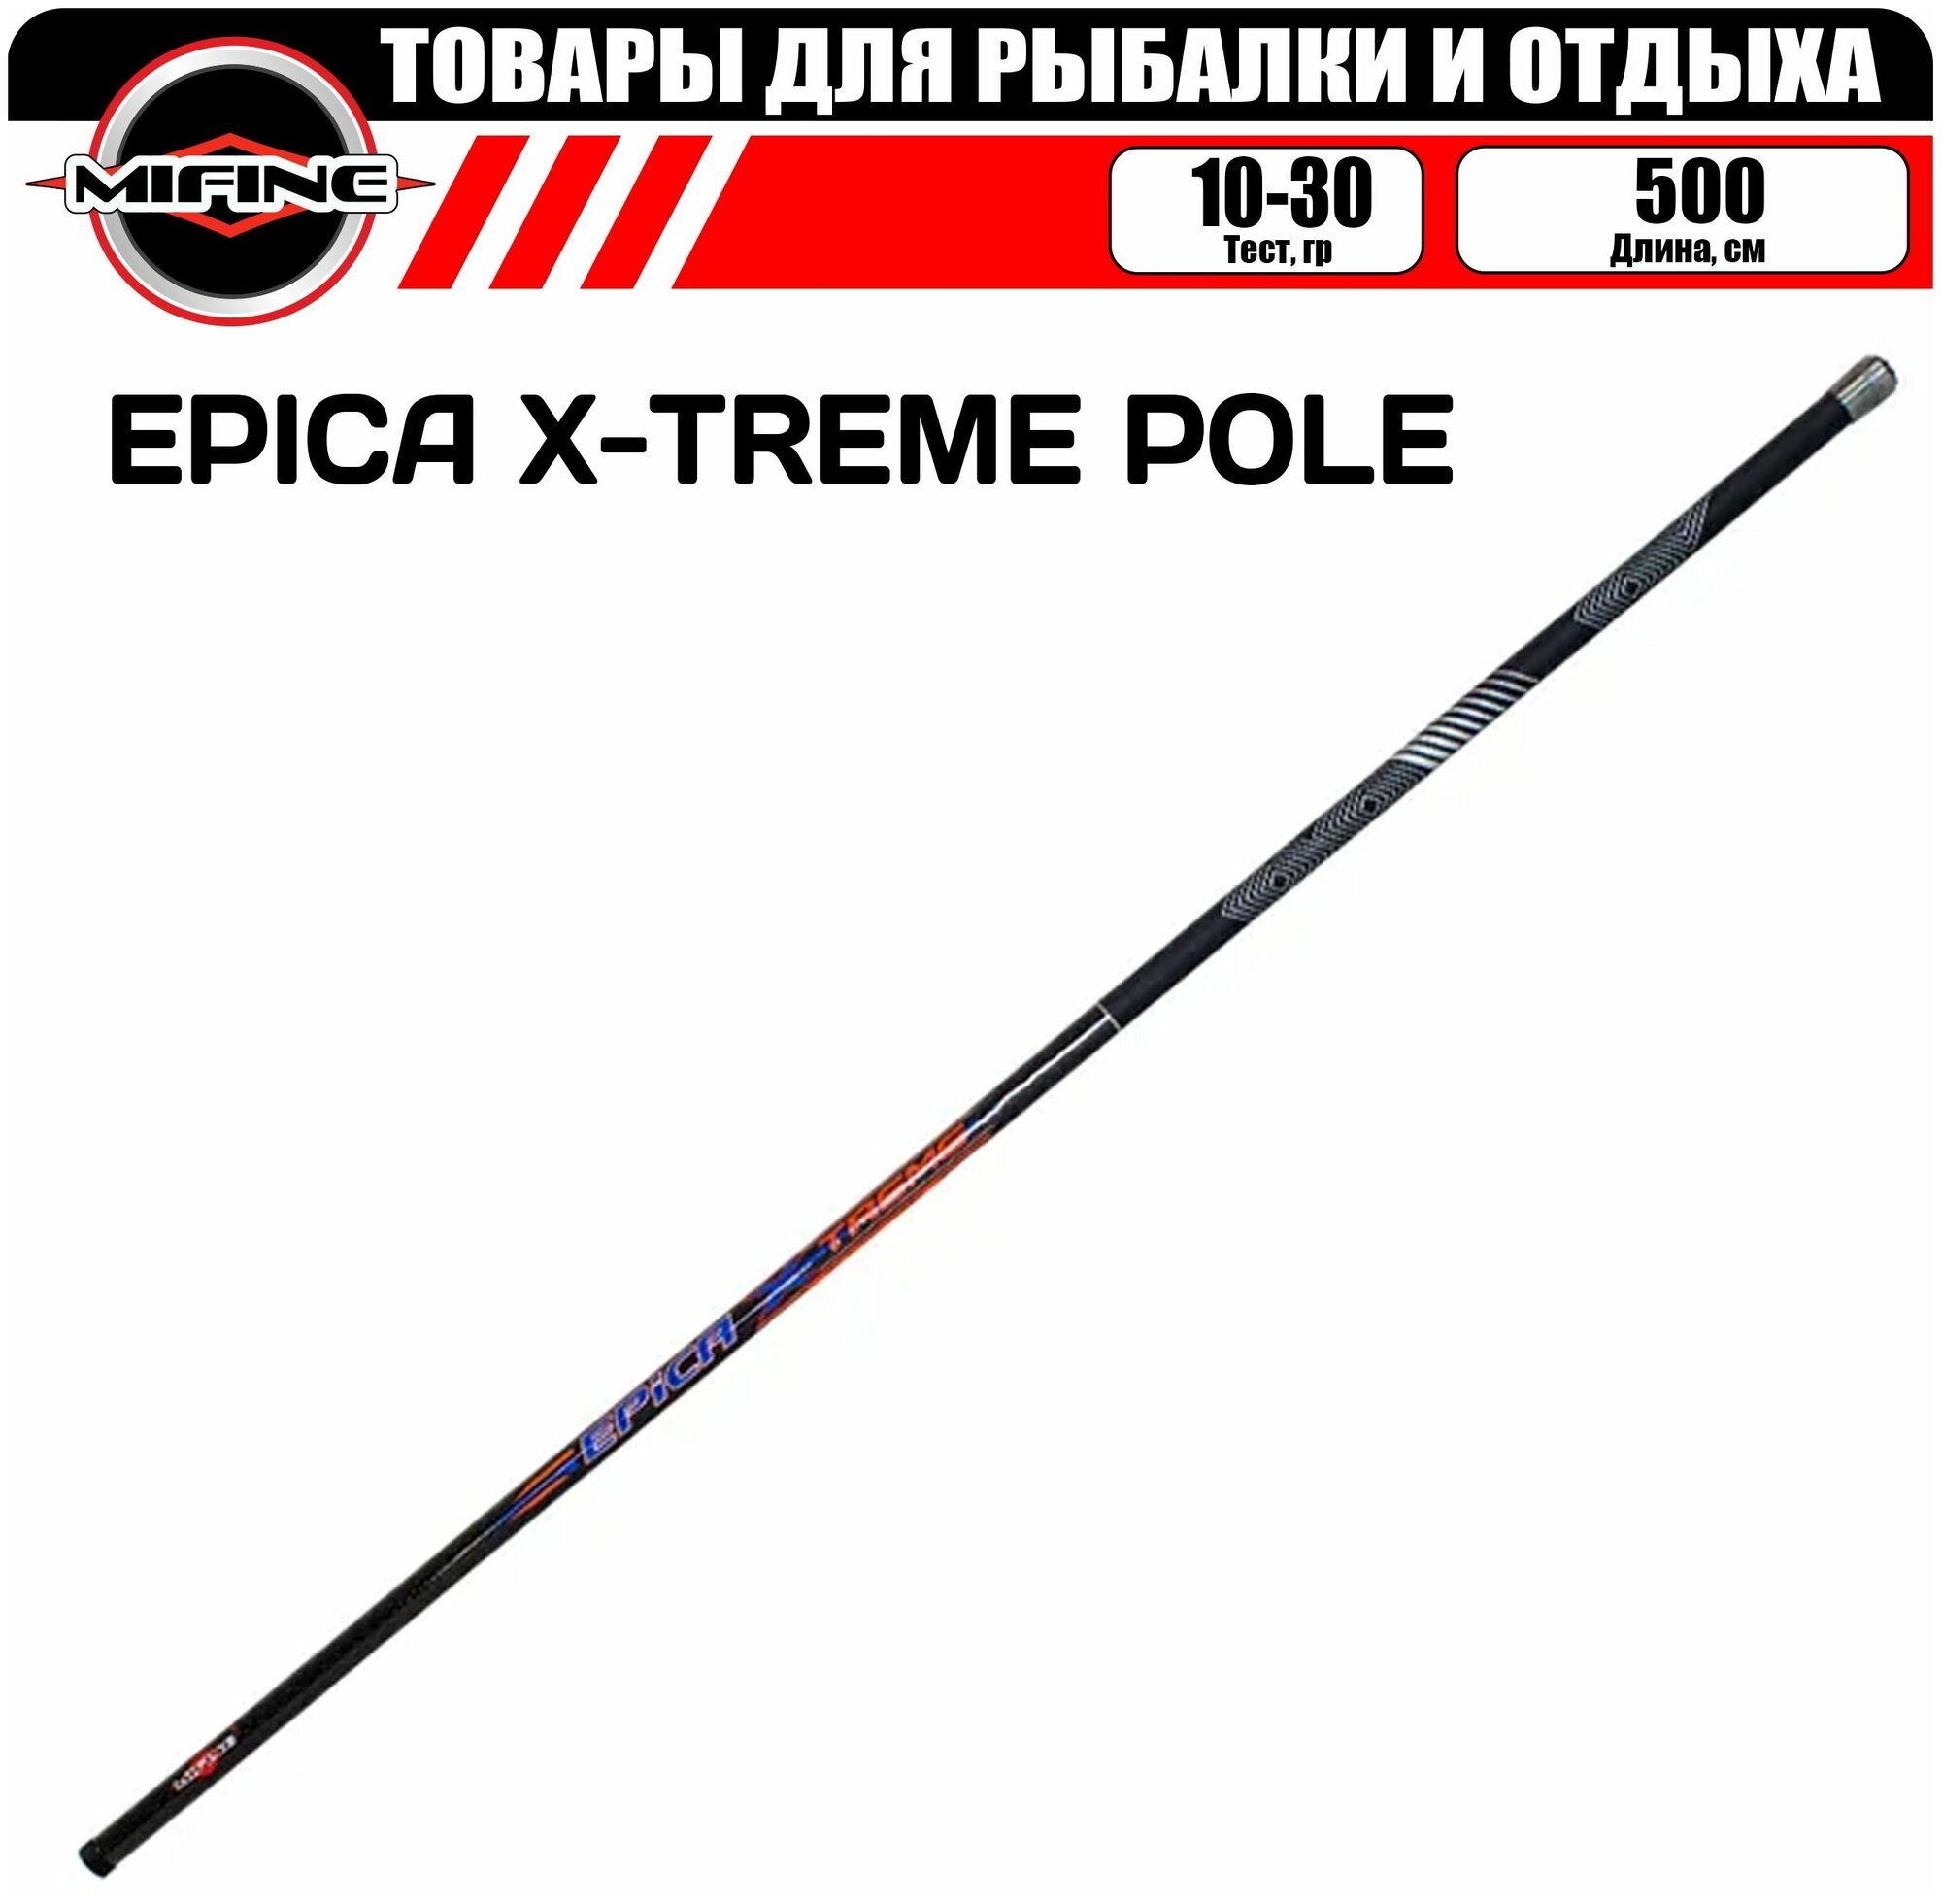 Удилище маховое Mifine Epica X-Treme pole 500 5 метров